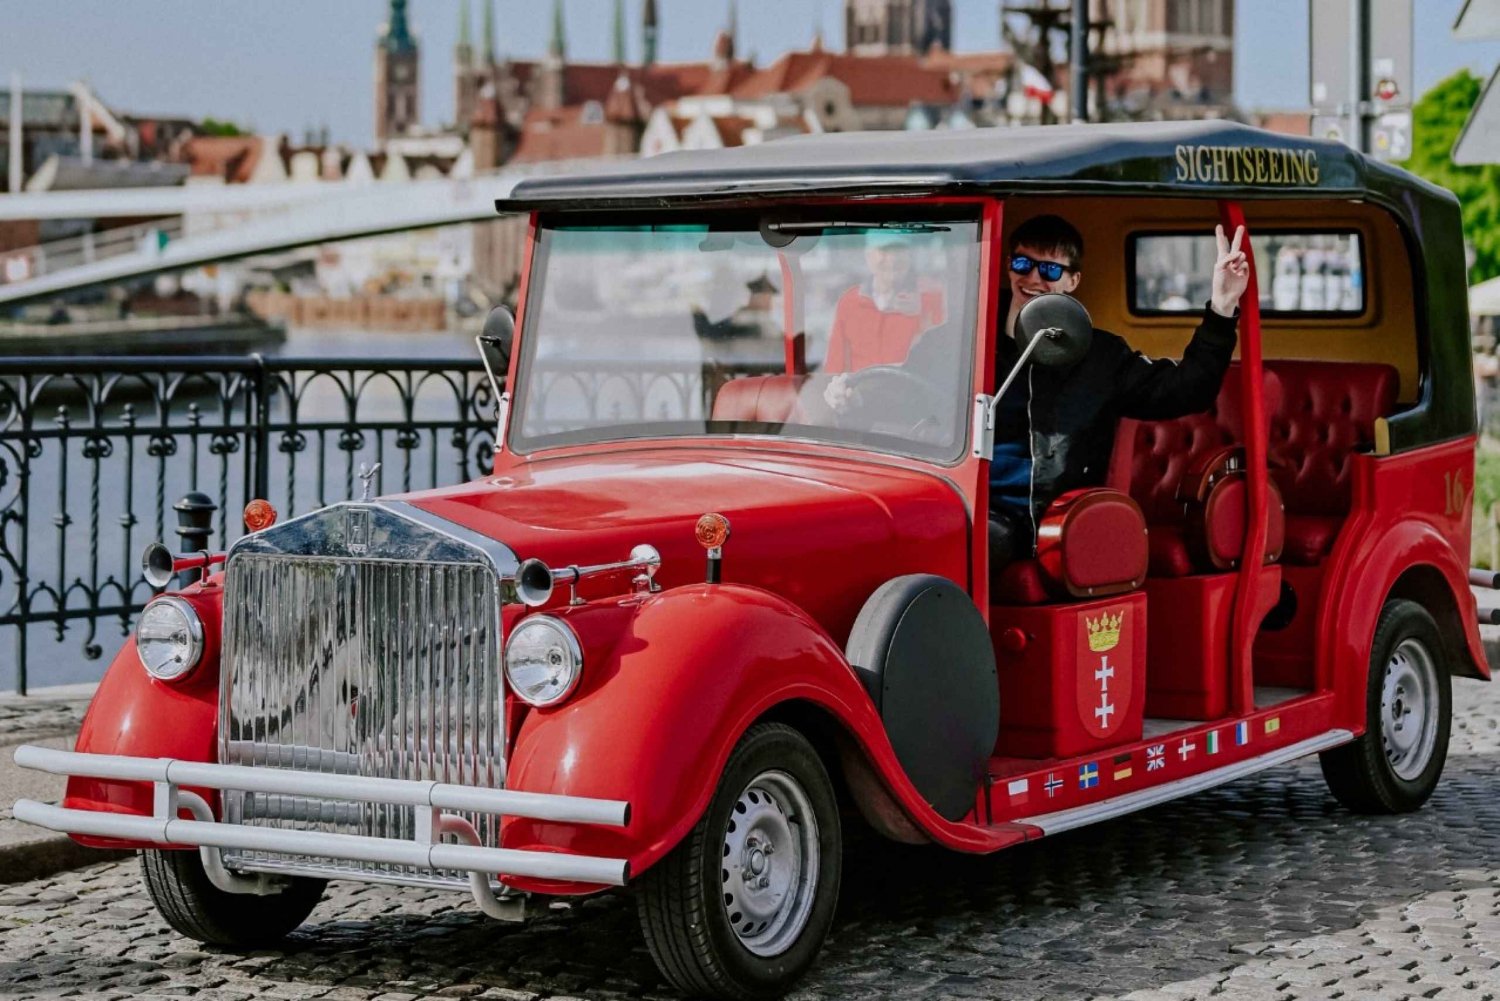 Reserva para hacer turismo en coches retro, Gdansk